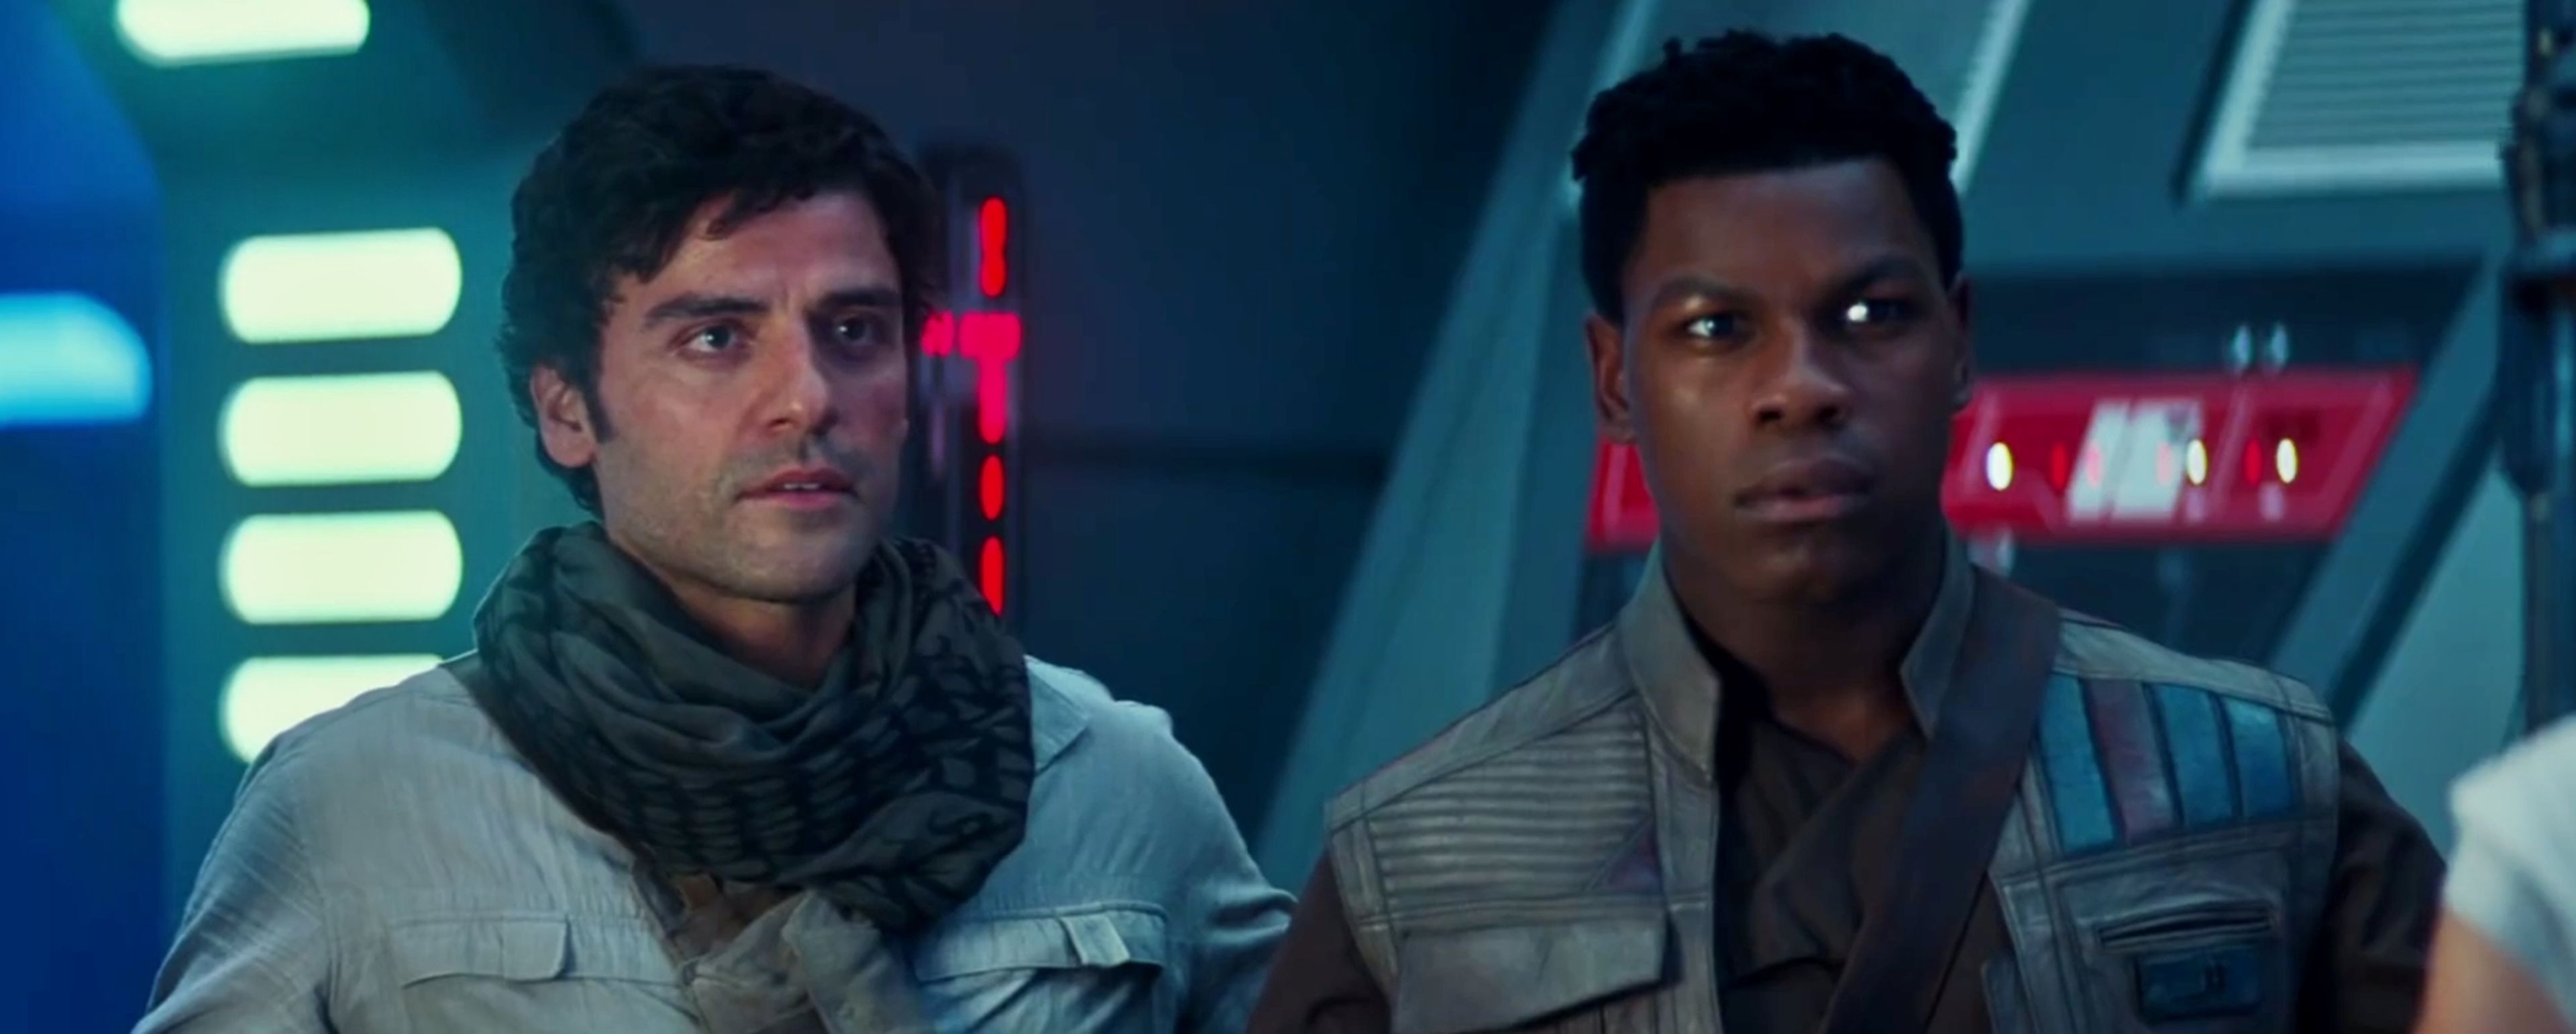 Star Wars El ascenso de Skywalker - Poe y Finn